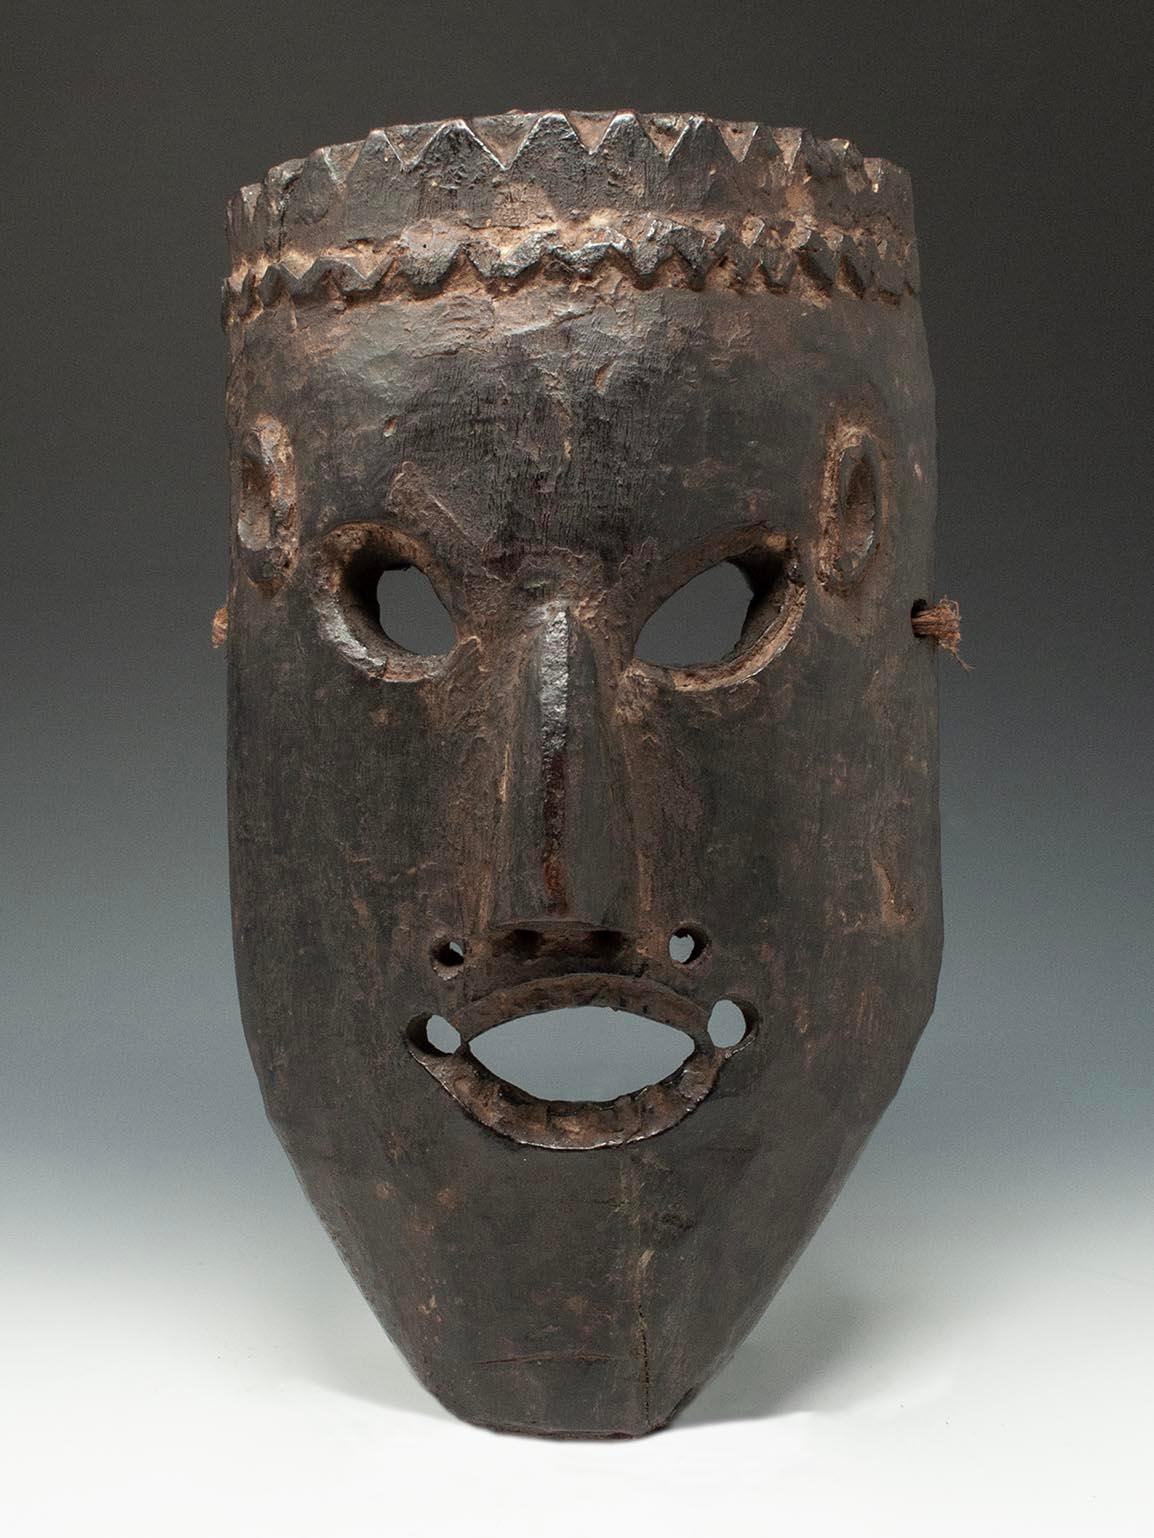 Fin du XIXe siècle-début du XXe siècle Masque tribal, Ouest du Népal

Masque de l'ouest du Népal avec des yeux en amande inclinés, de très petites oreilles et une bouche ovale montrant des dents supérieures et inférieures sculptées sur un menton